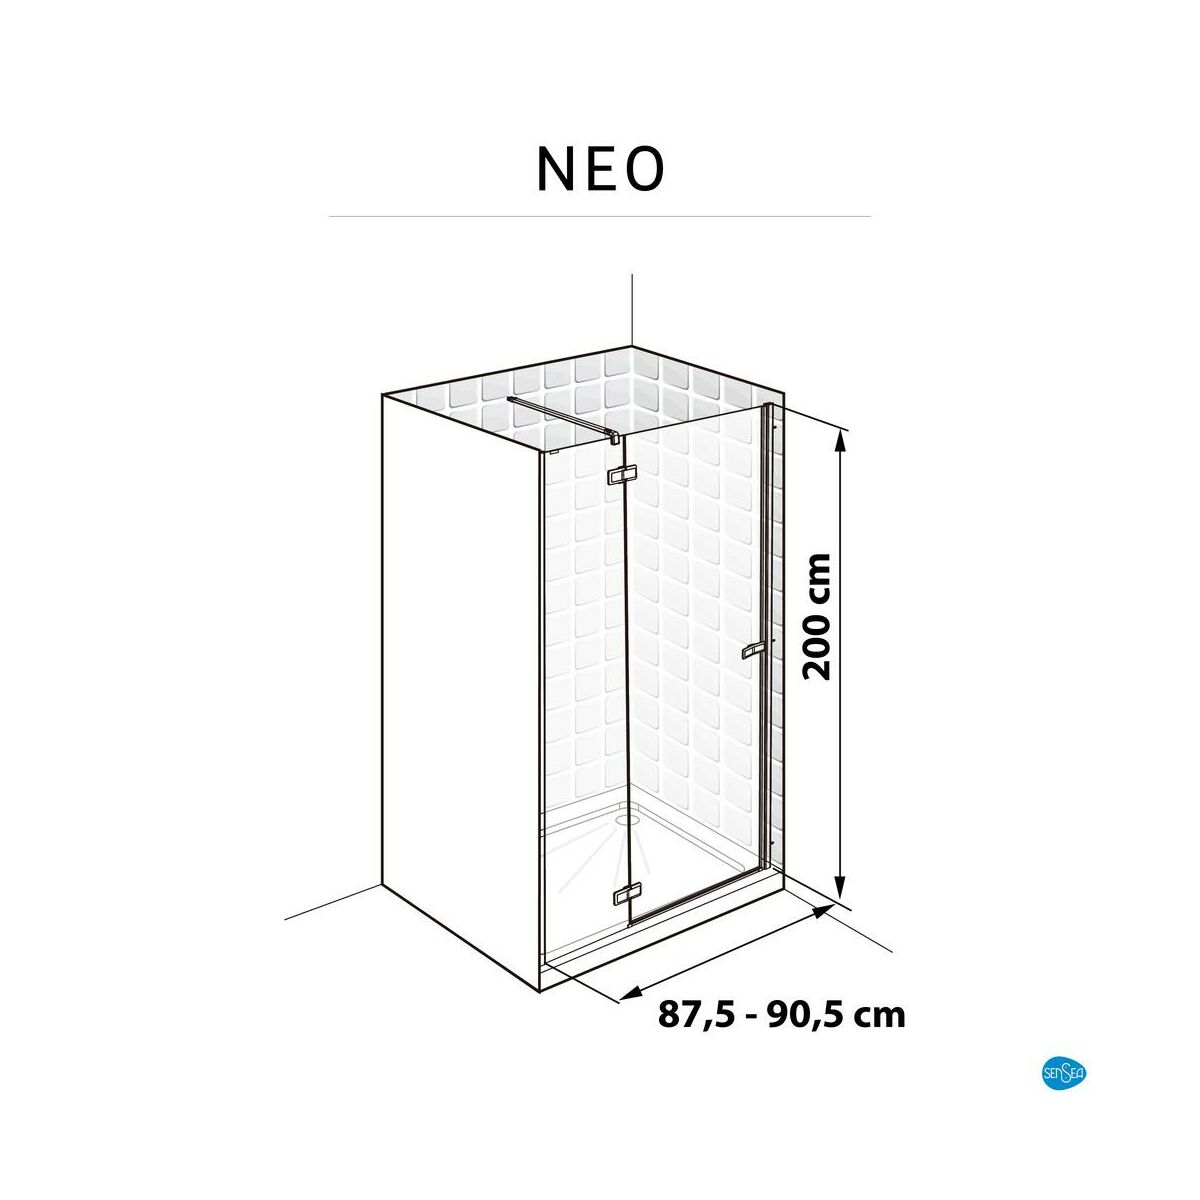 Drzwi prysznicowe uchylne Neo Strruktura 90 X 200 Sensea